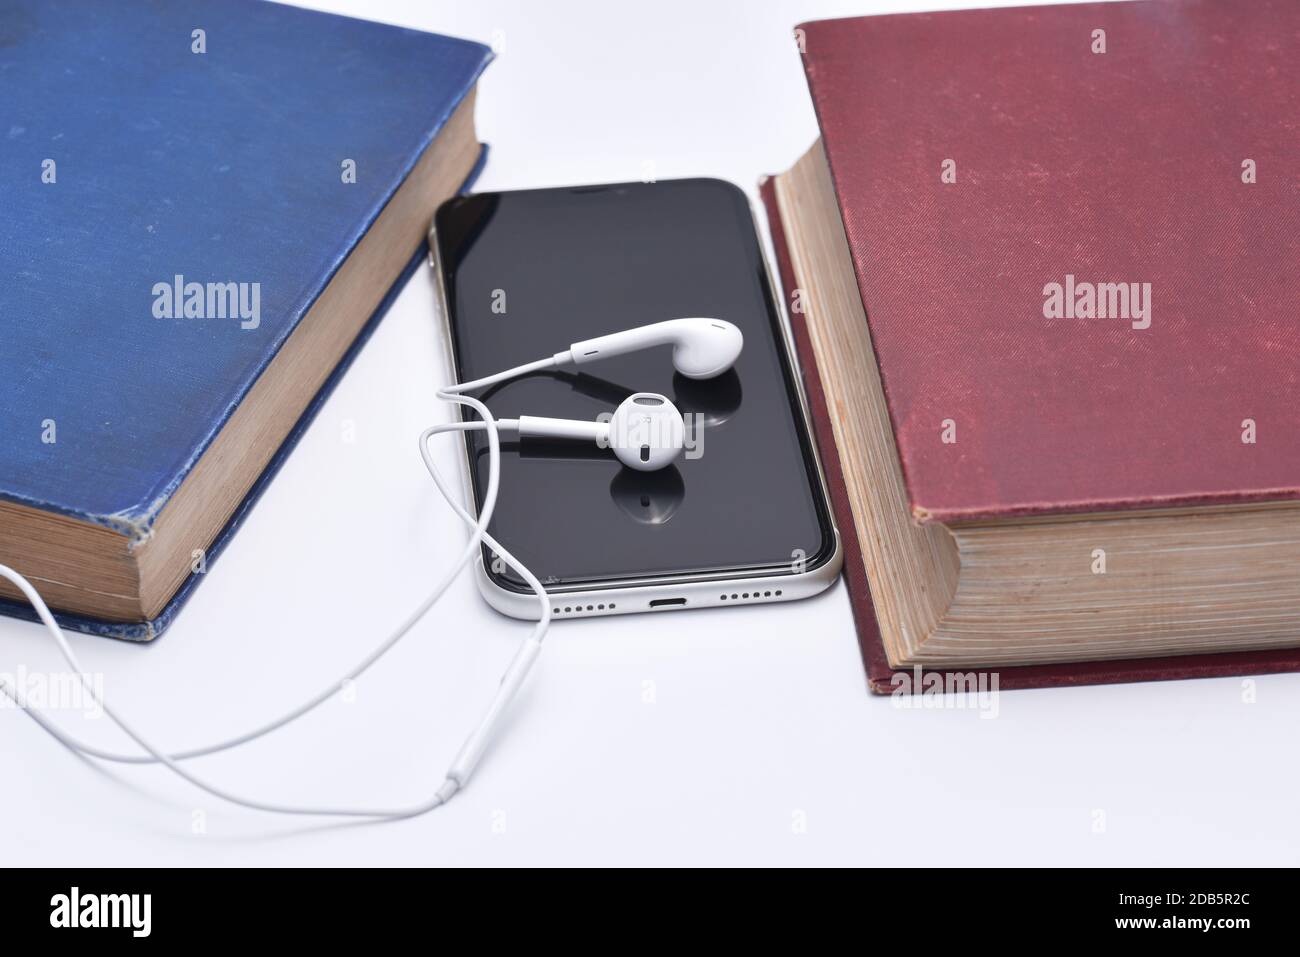 Ensemble de livres lus en tant que fichier audio via le haut-parleurs de casque Banque D'Images